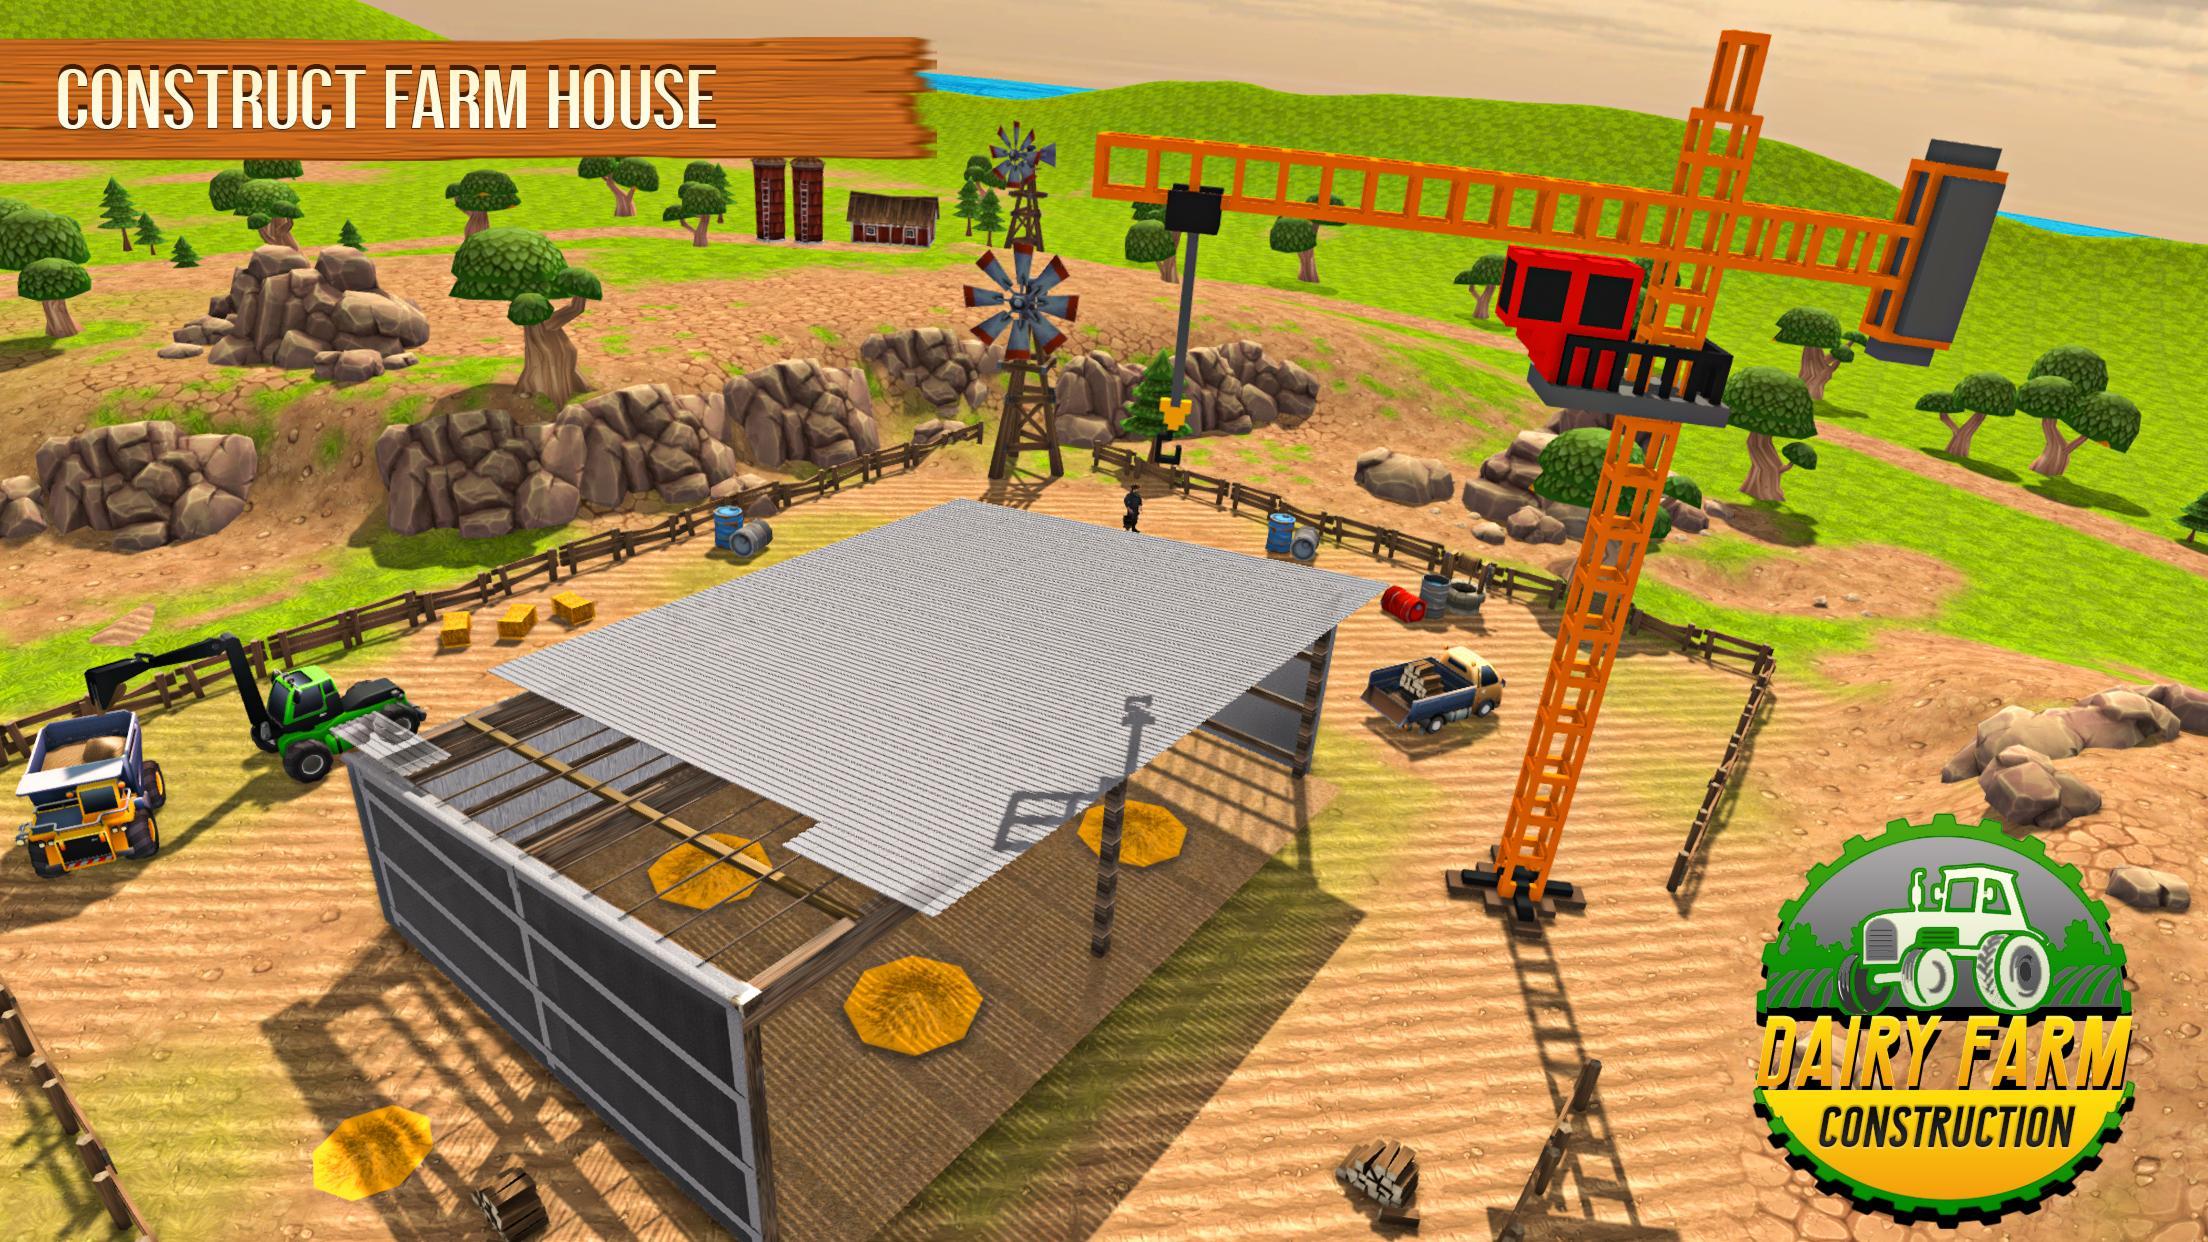 قرية الماشية البيت البناء مزرعة باني for Android - APK Download